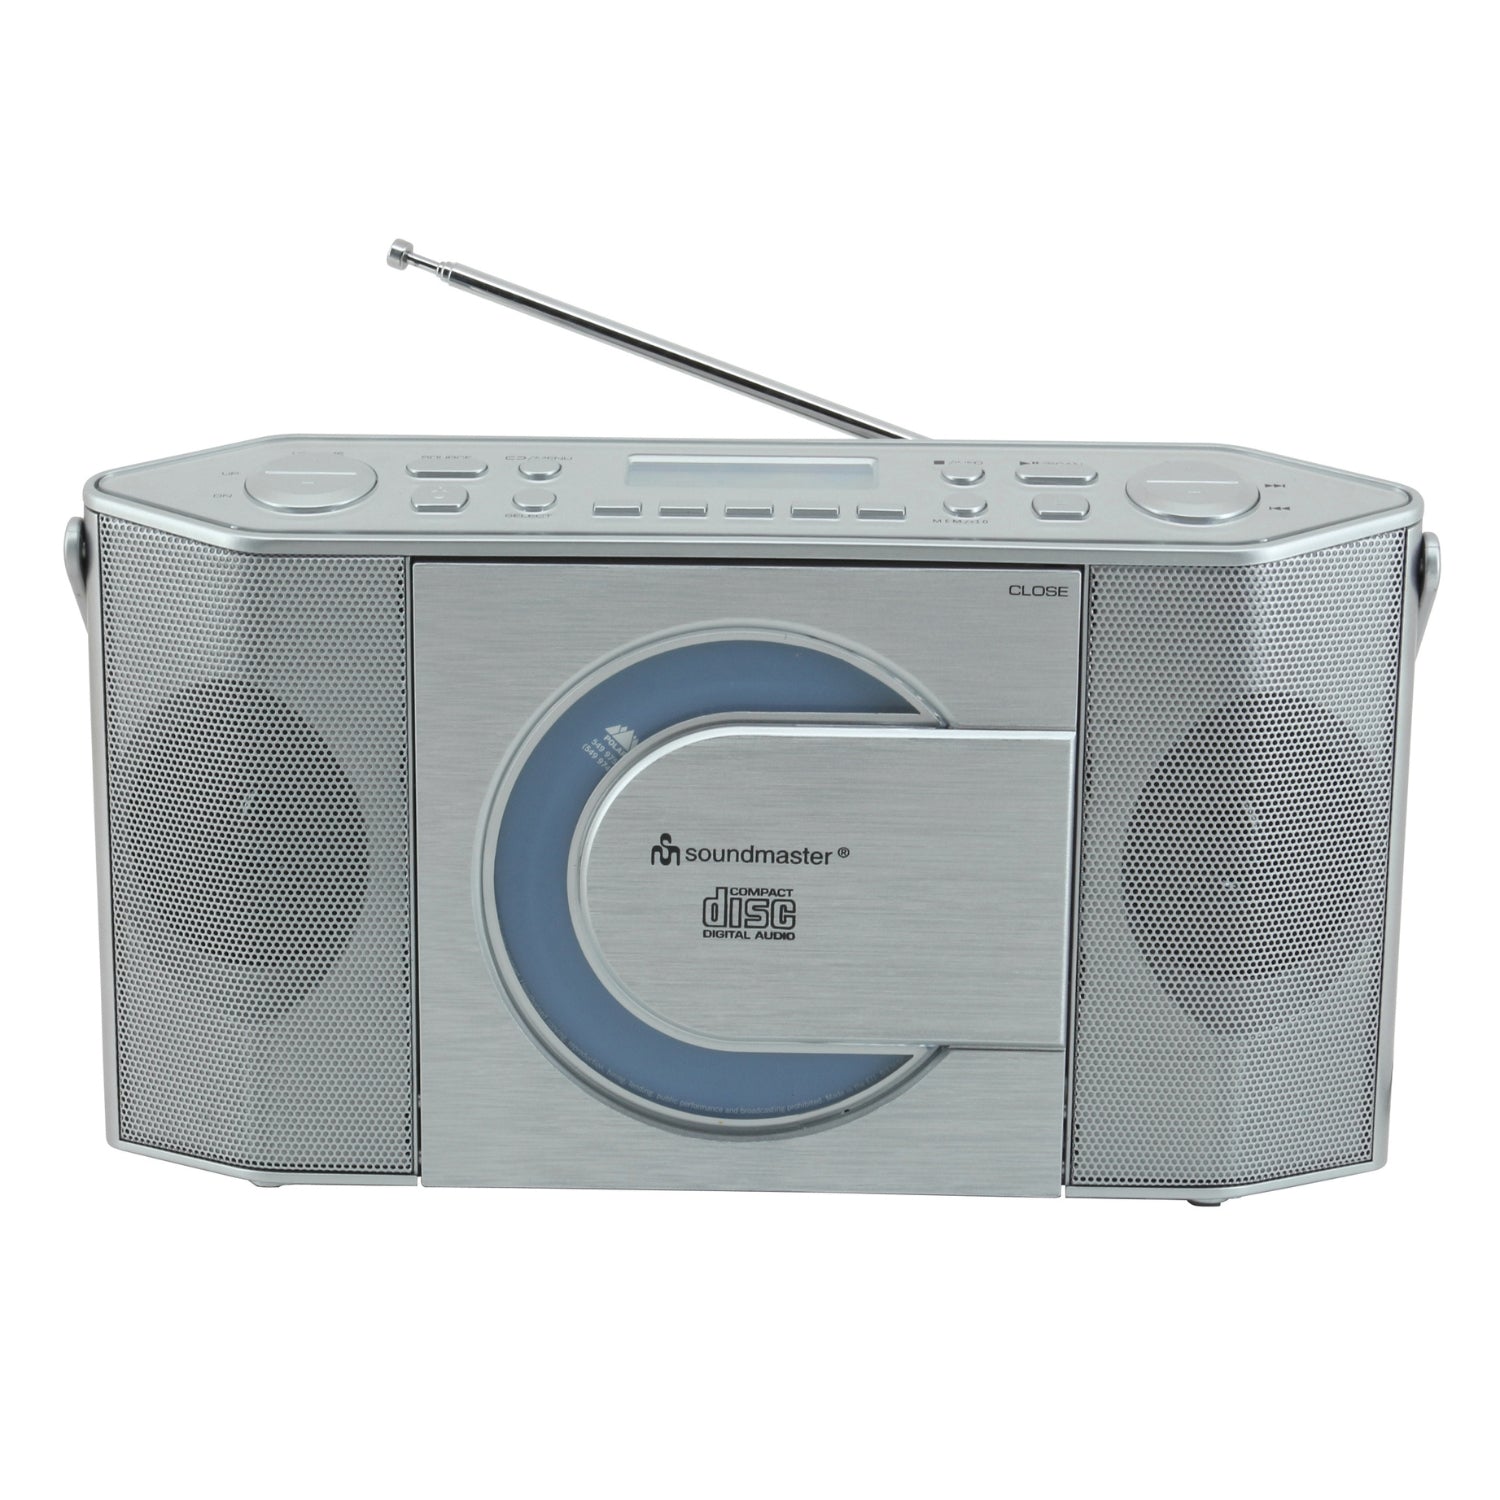 Soundmaster RCD1770SI enregistreur radio numérique DAB+ avec USB et lecteur CD casque MP3 horloge